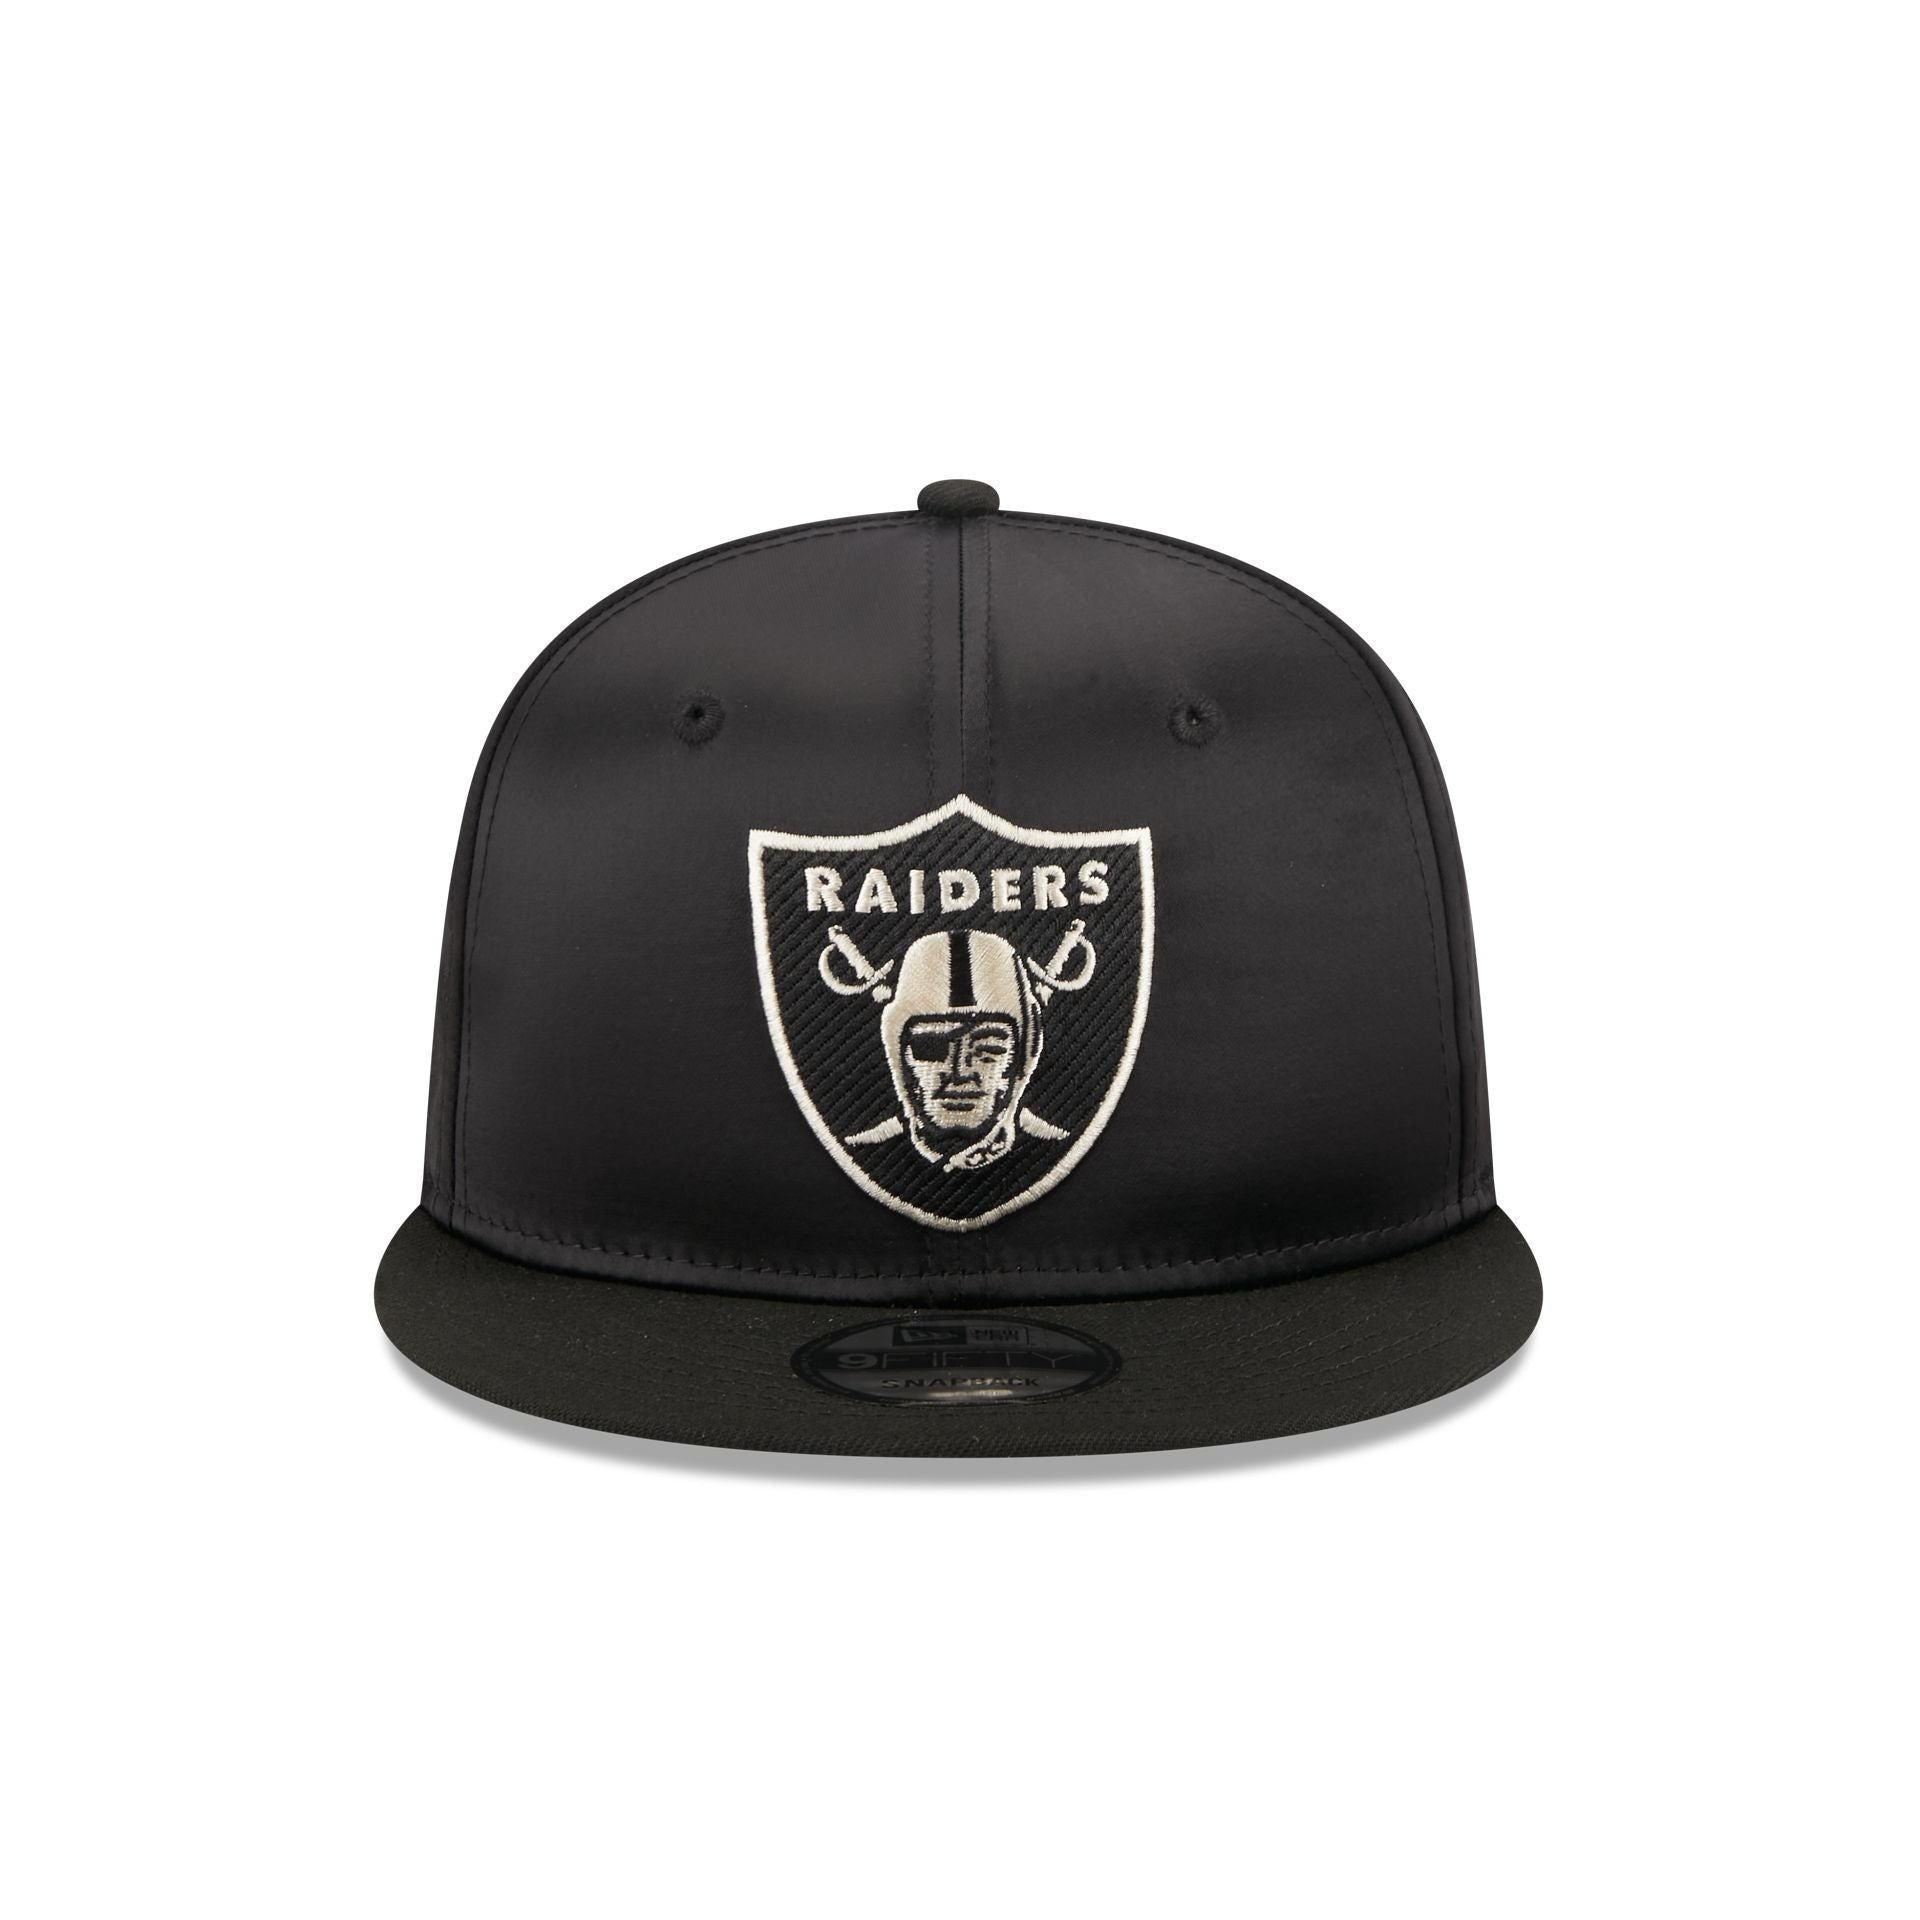 Men's Las Vegas Raiders Pro Standard White/Black 2Tone Snapback Hat